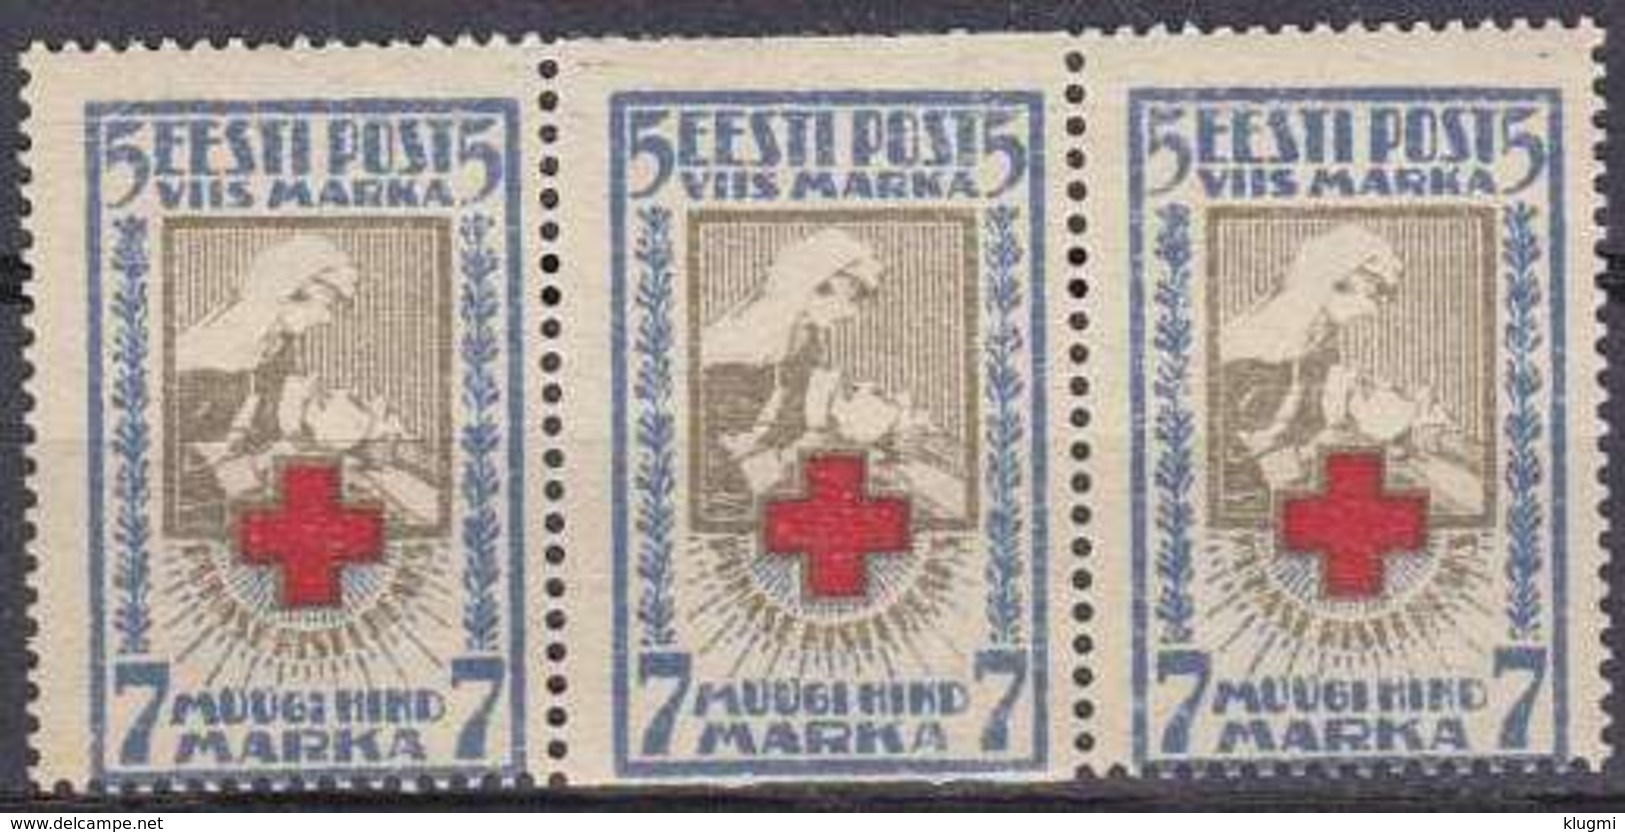 ESTLAND ESTONIA [1921] MiNr 0030 A Uw ( **/mnh ) [01] Rotes Kreuz 3er - Estland